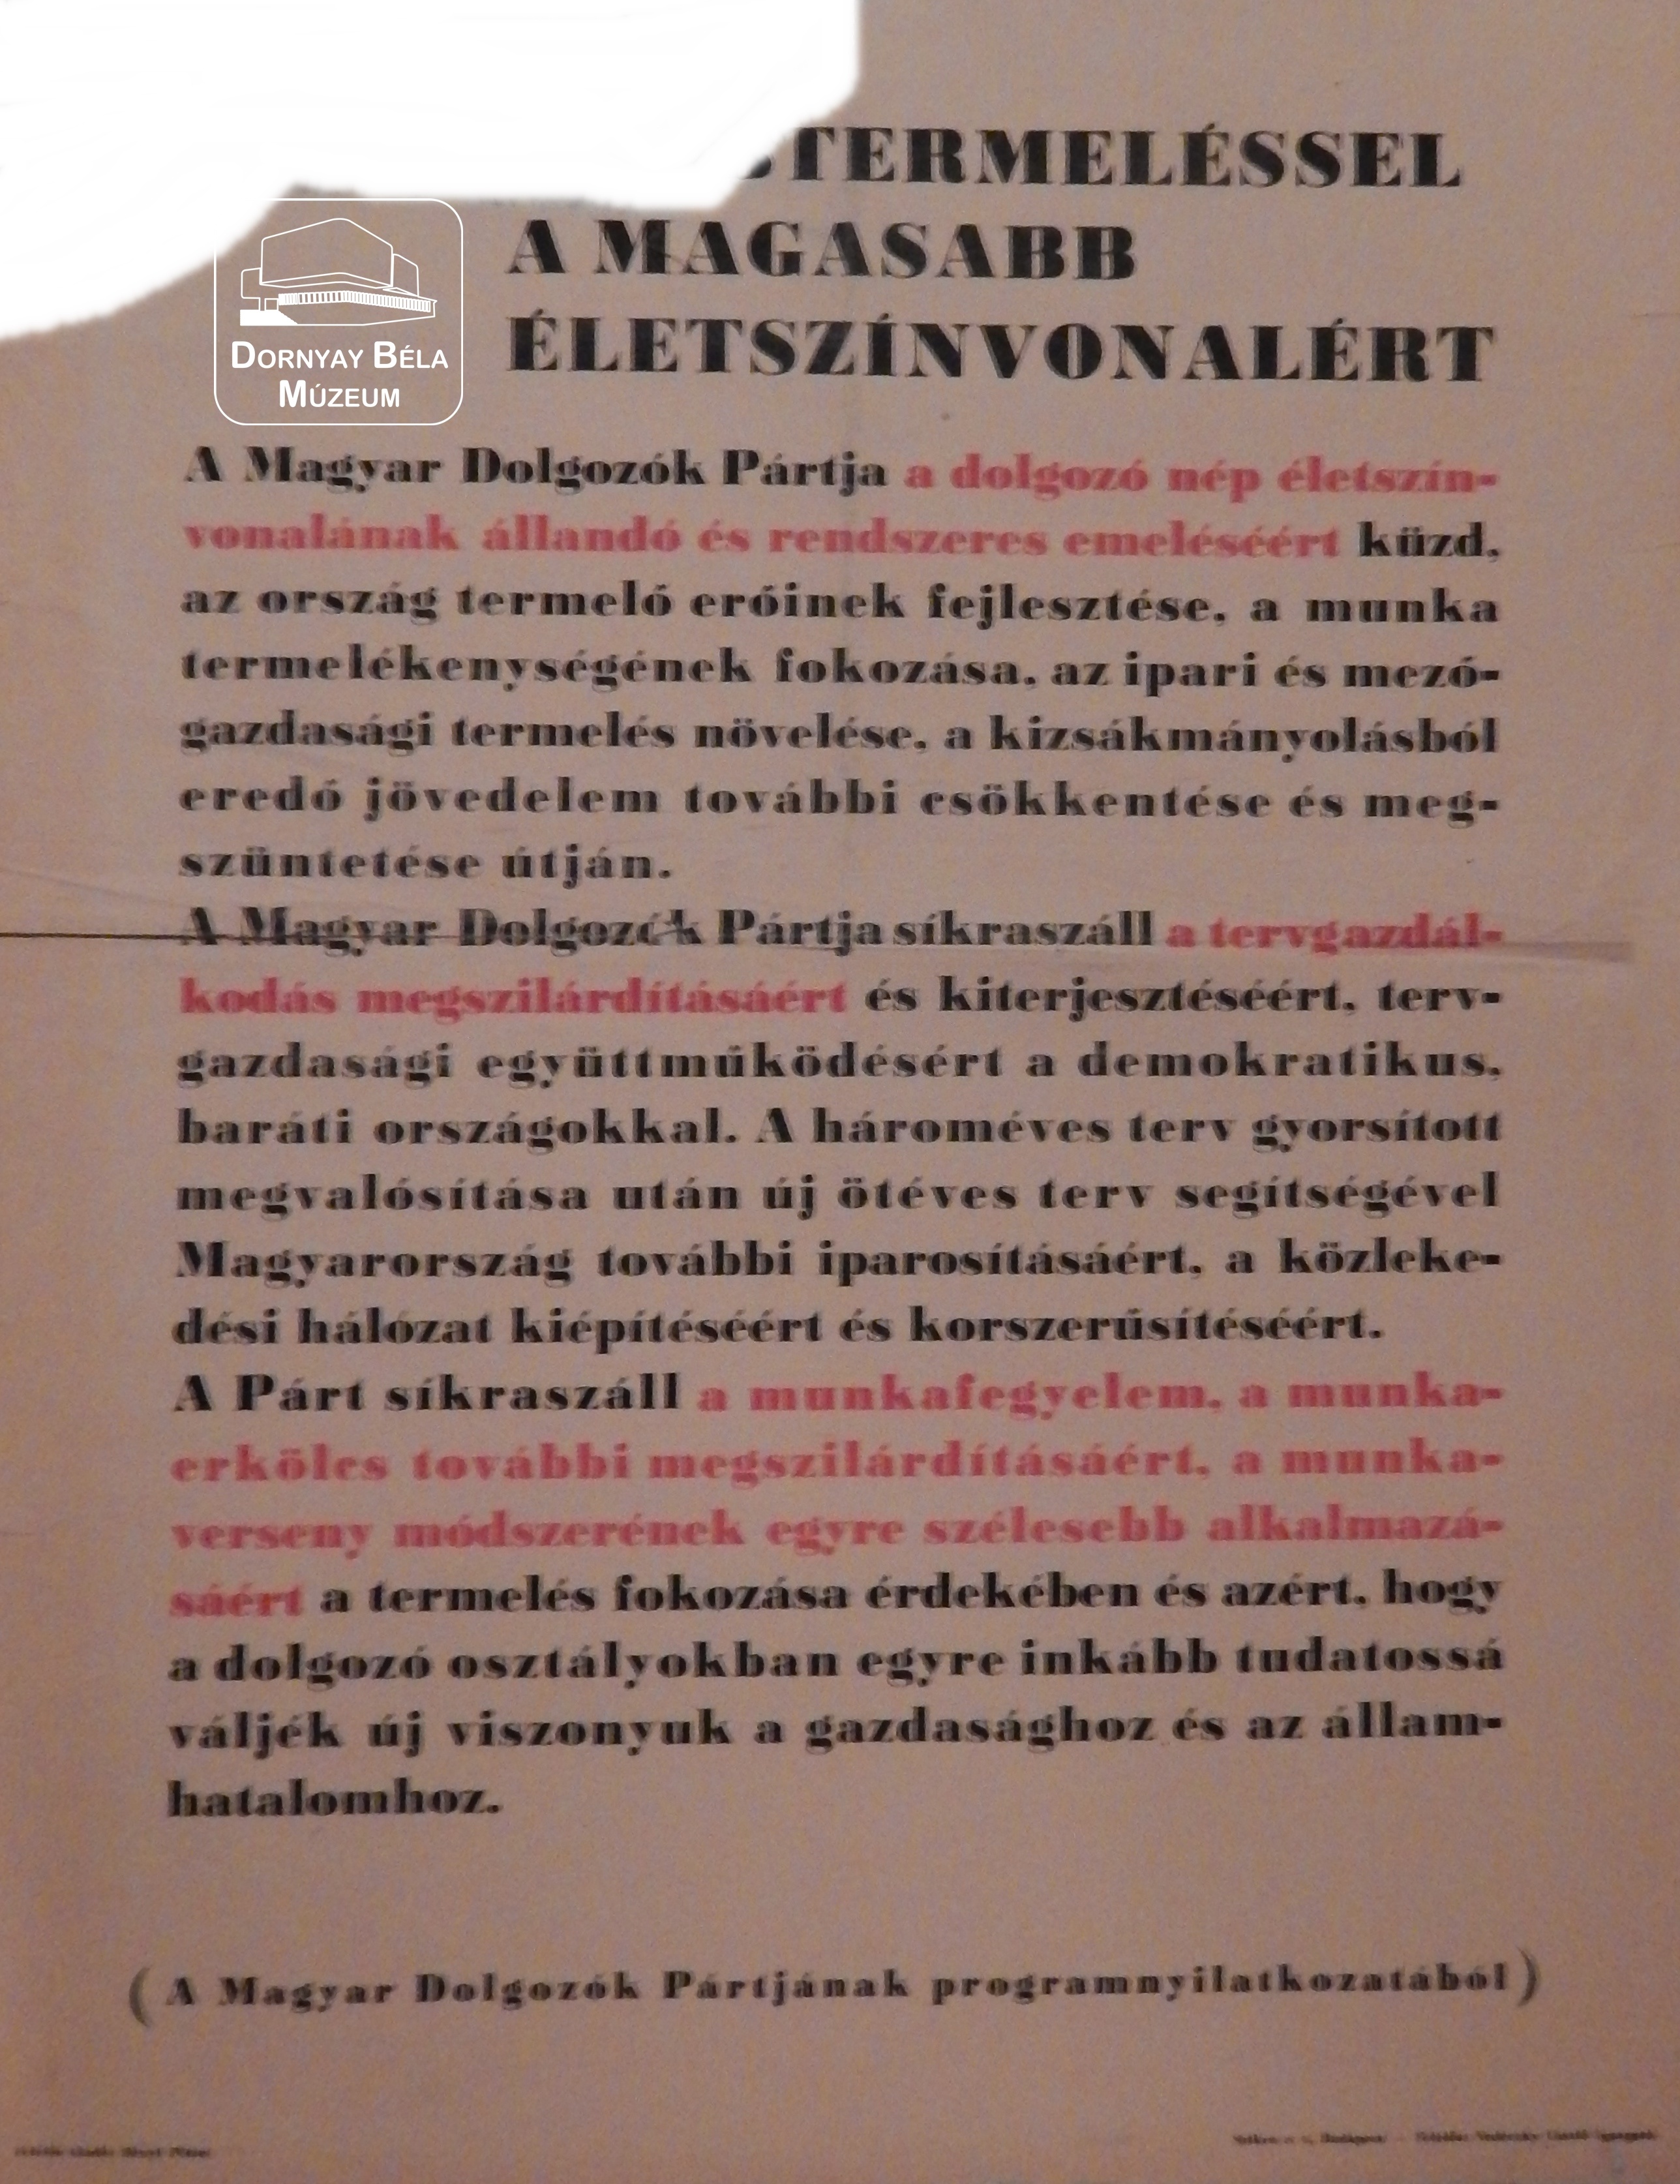 Magyar Dolgozók Pártja a magasabb életszínvonalért (Dornyay Béla Múzeum, Salgótarján CC BY-NC-SA)